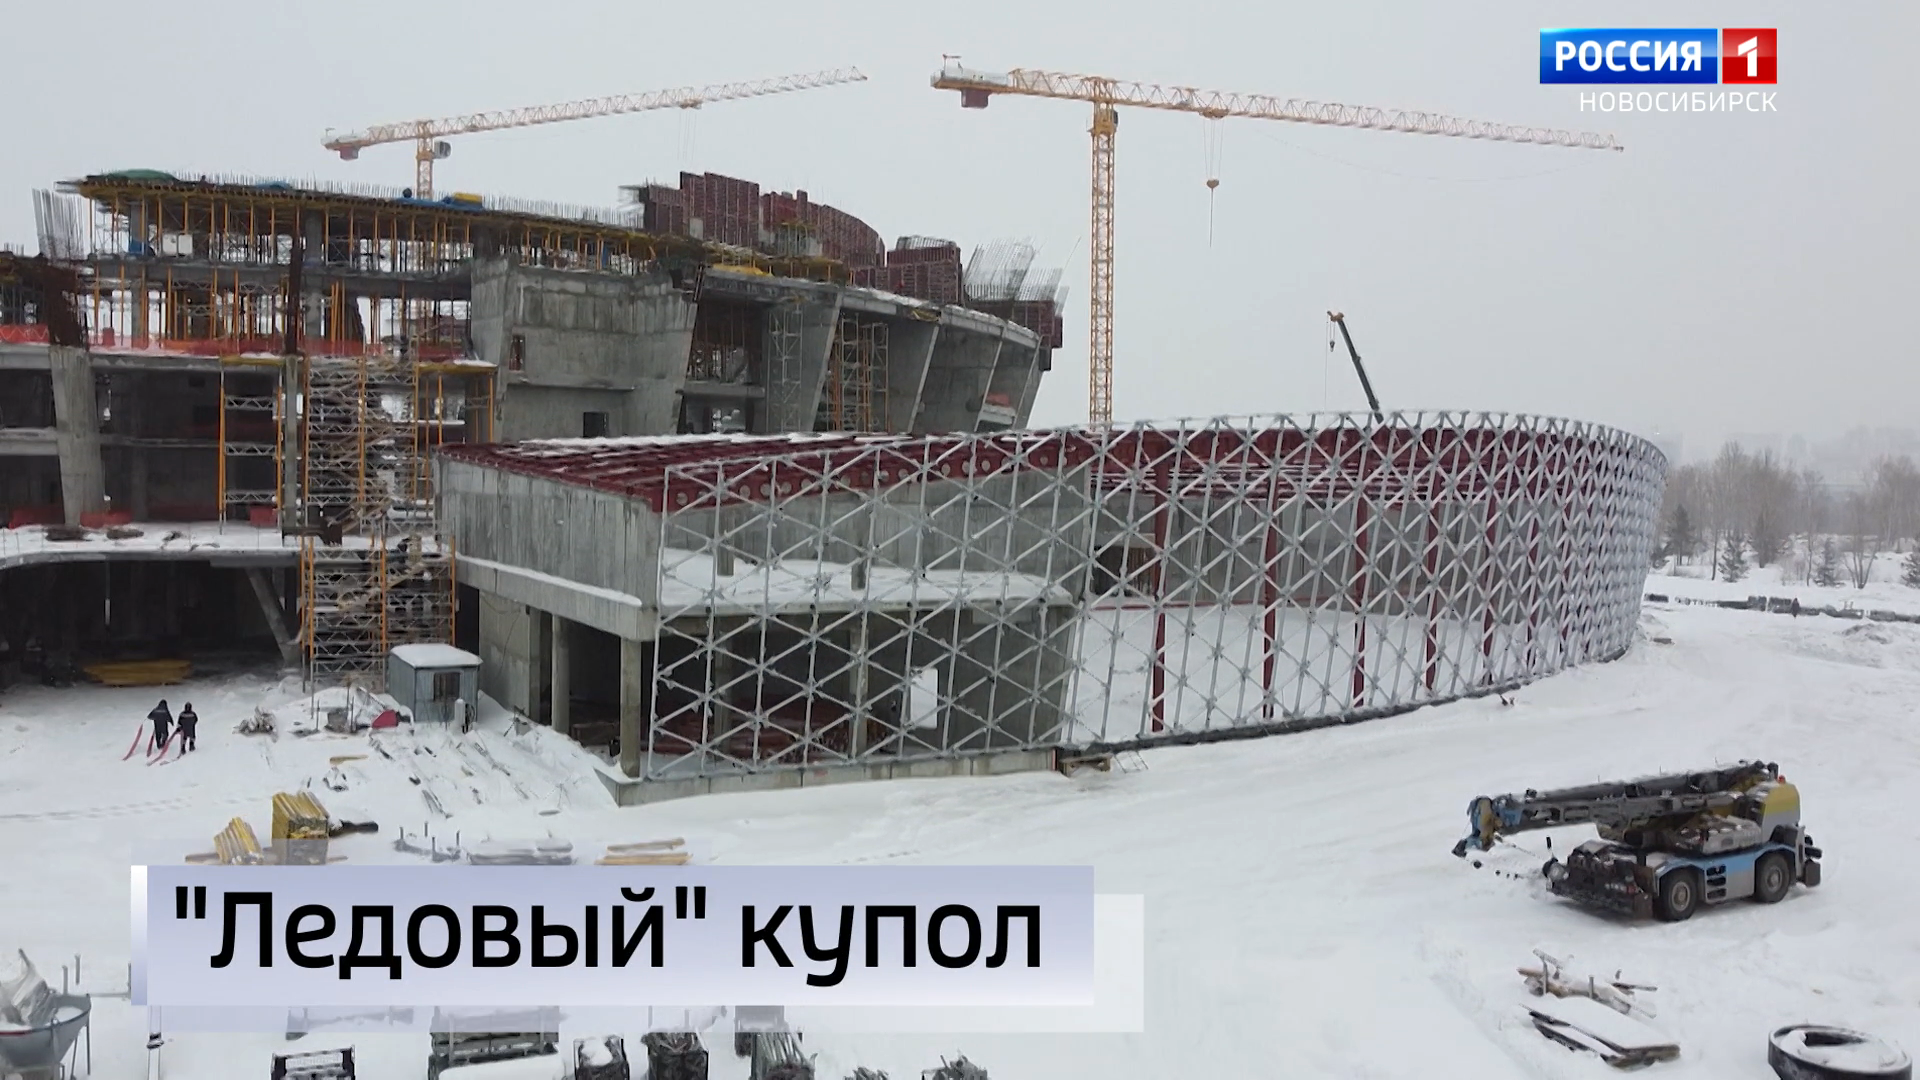 Сотни тонн веса, ювелирная работа: на Ледовом дворце спорта начали монтировать купол